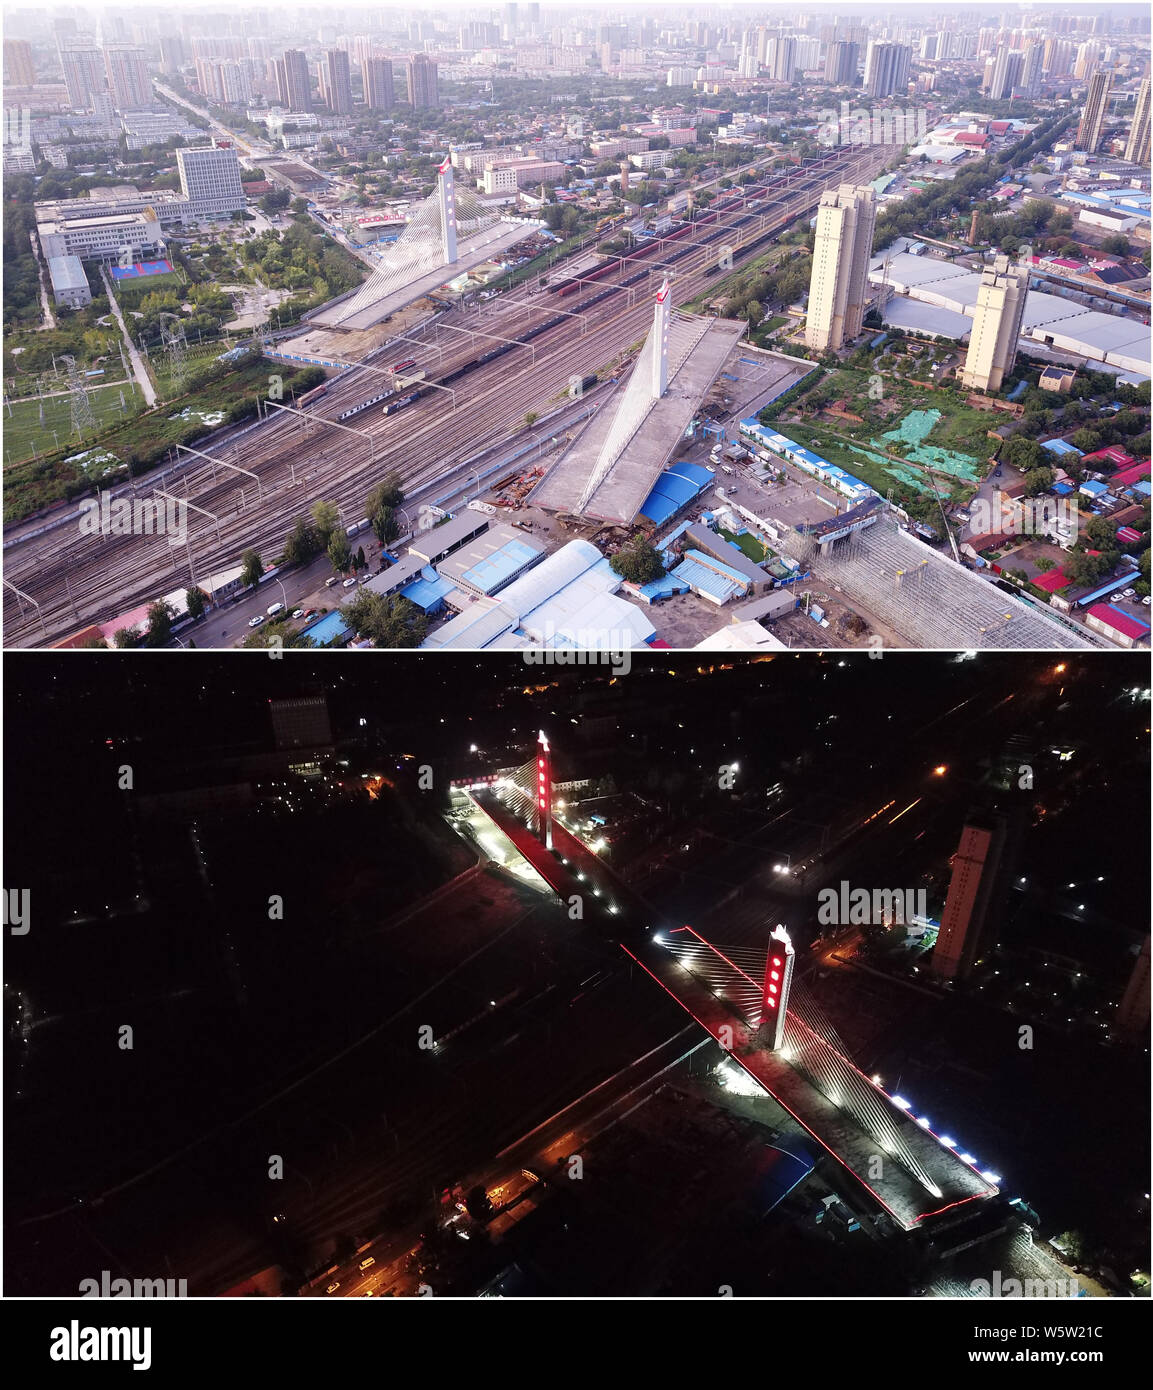 (190730) -- BAODING, luglio 30, 2019 (Xinhua) -- Questo combo mostra fotografica di due parti di un ponte al di sopra della ferrovia Beijing-Guangzhou prima (superiore, fotografia scattata a luglio 29, 2019) e dopo (fondo, fotografia scattata a luglio 30, 2019) sono ruotate correttamente alle loro posizioni mirate utilizzando la costruzione dello snodo nel metodo di Baoding, nel nord della Cina di nella provincia di Hebei. La Cina ha adottato la struttura girevole metodo nella costruzione di molti ponti per ridurre al minimo le interferenze con il traffico sotto. Il metodo consente di superare i vincoli di ambiente e traffico, mentre un accorciamento del periodo di costruzione. (Xinhu Foto Stock